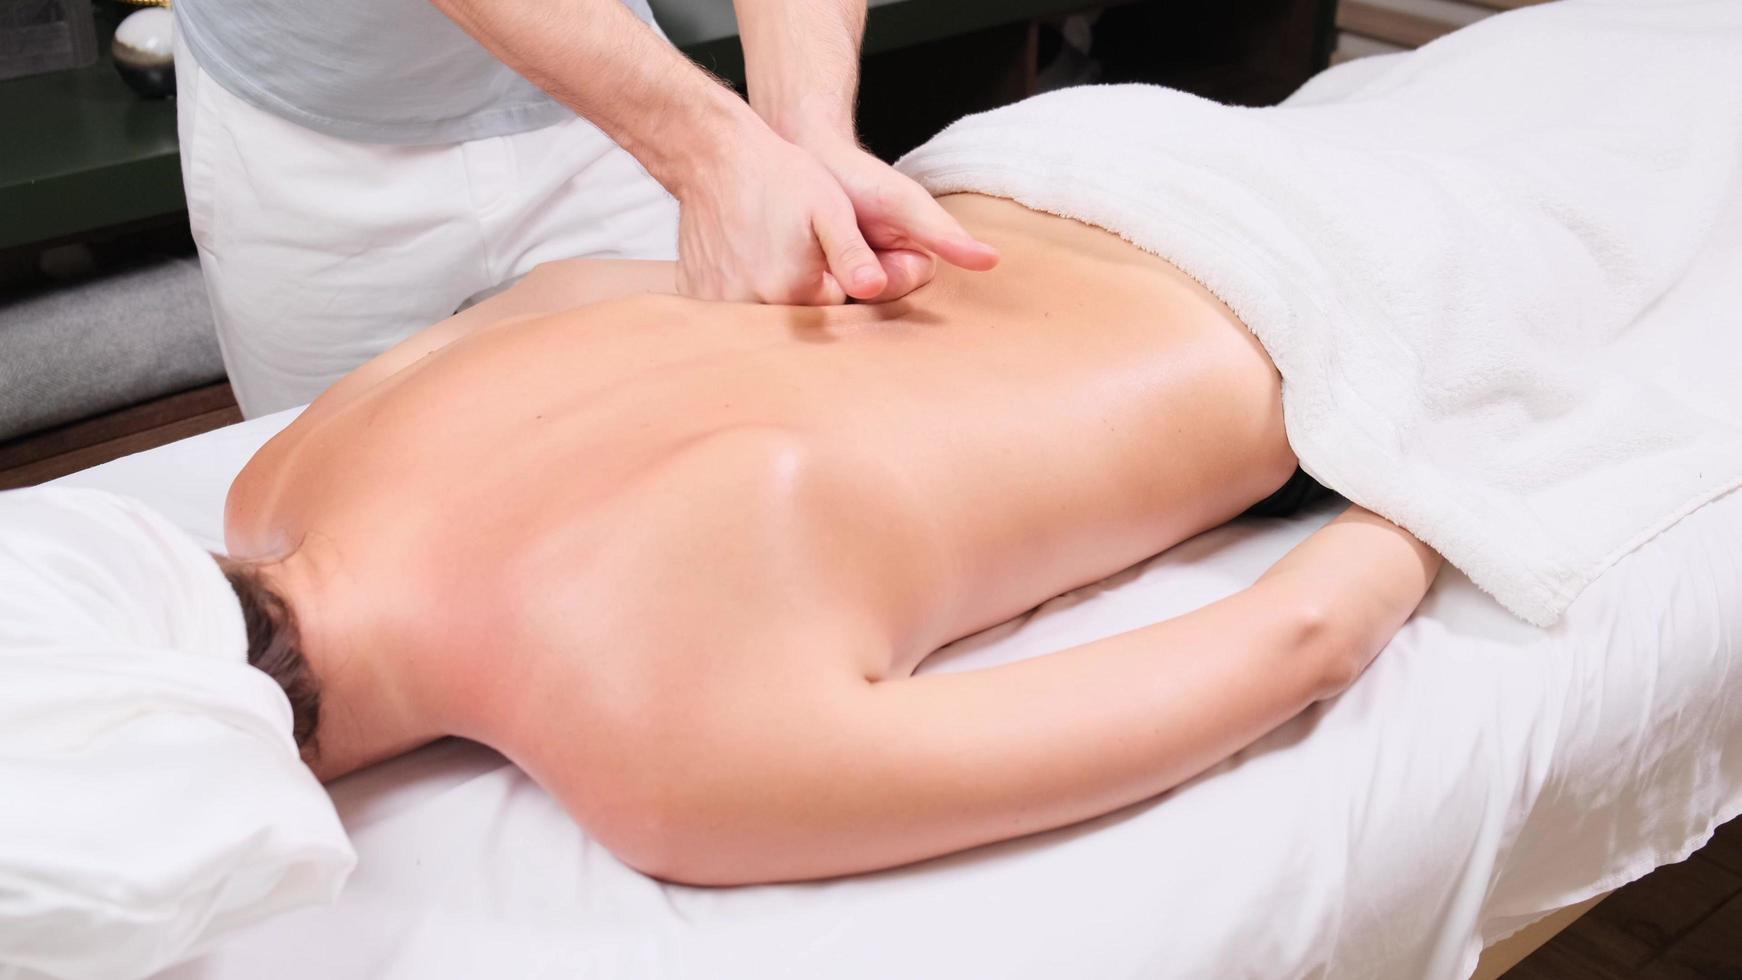 Woman getting a back massage photo